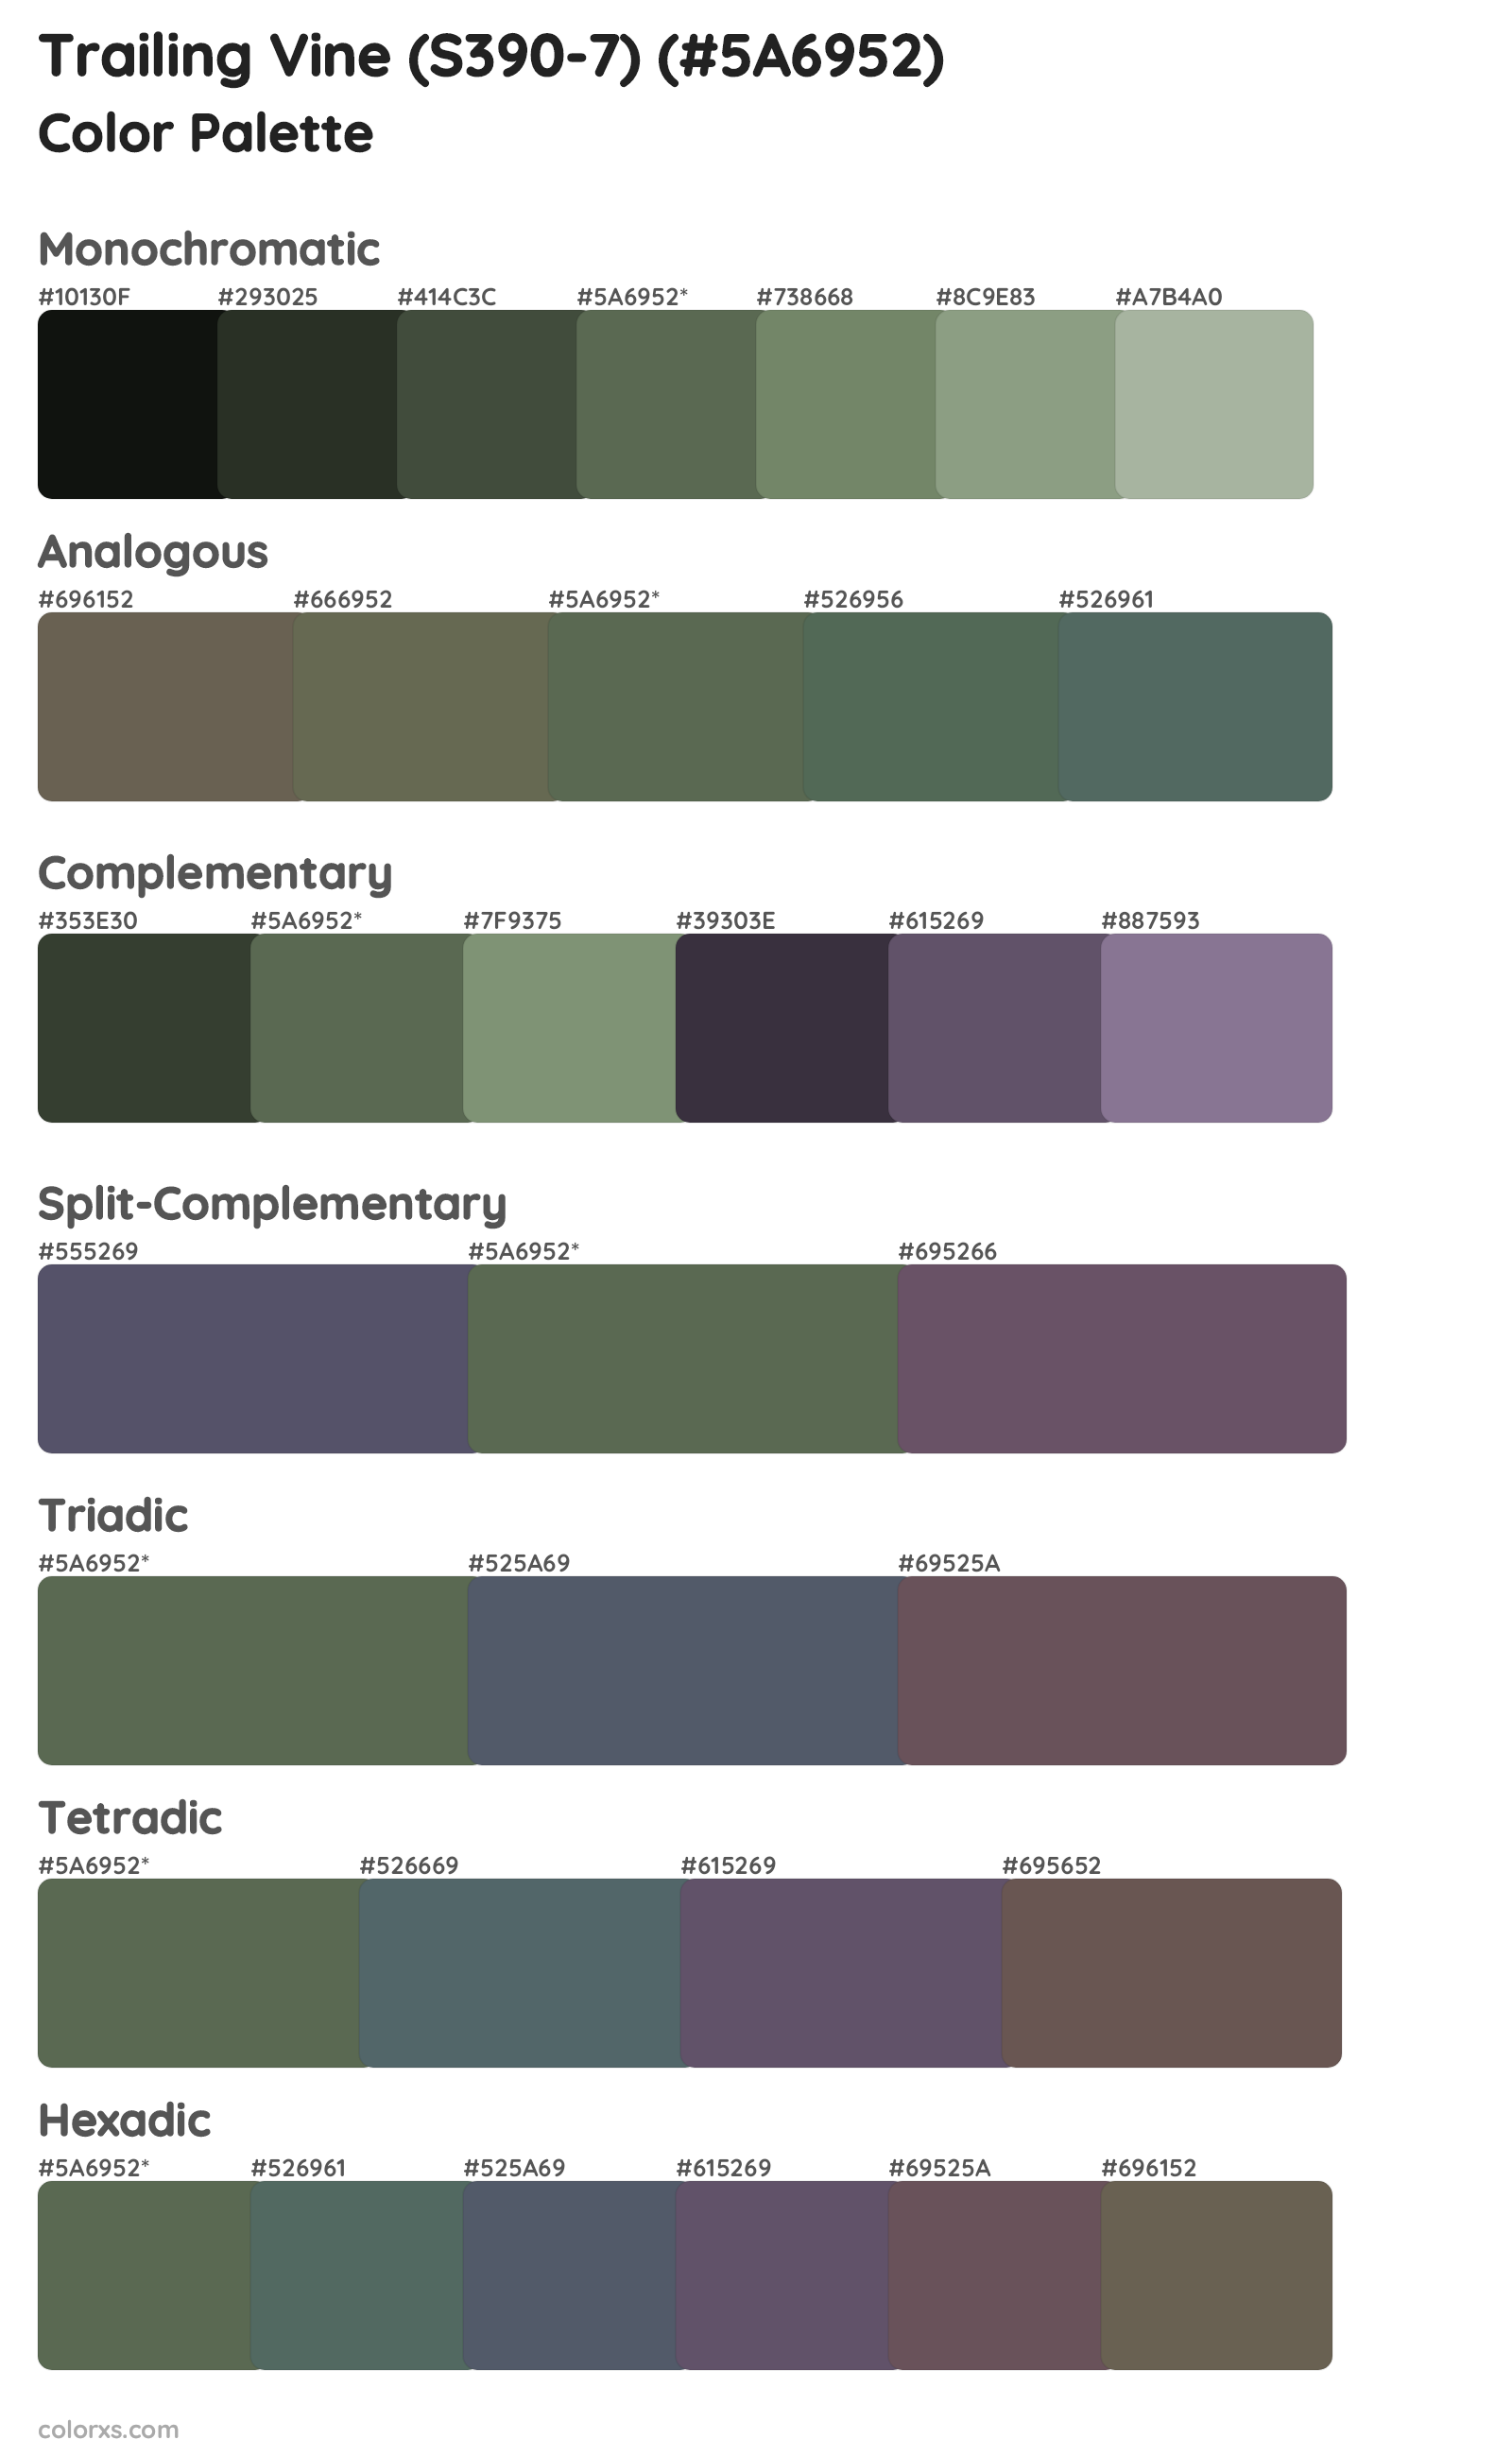 Trailing Vine (S390-7) Color Scheme Palettes